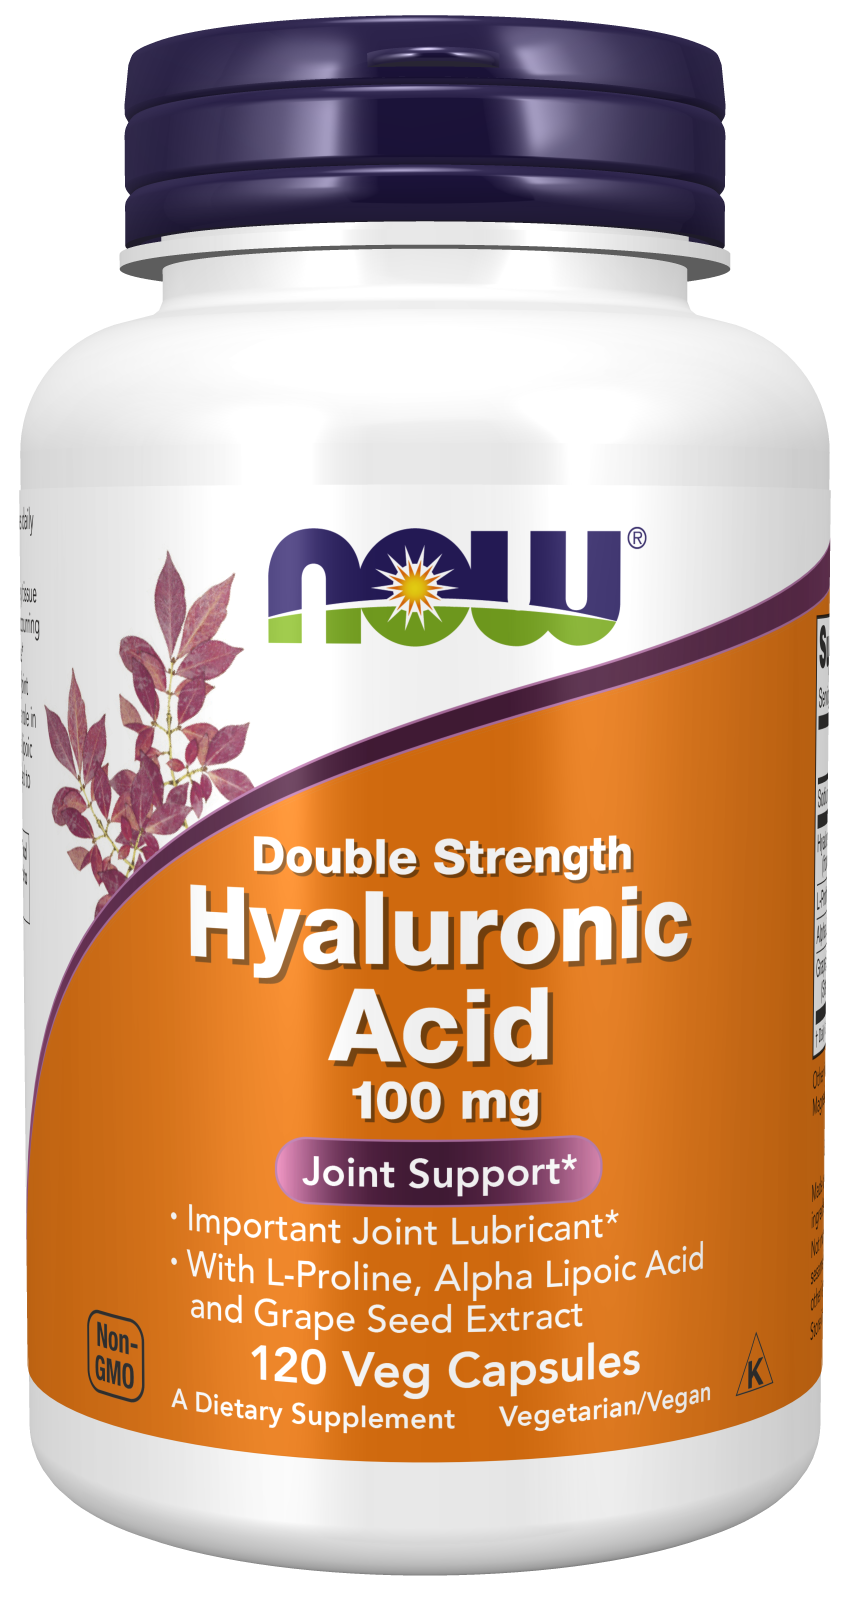 Hyaluronic Acid, Double Strength 100 mg - 120 Veg Capsules Bottle Front